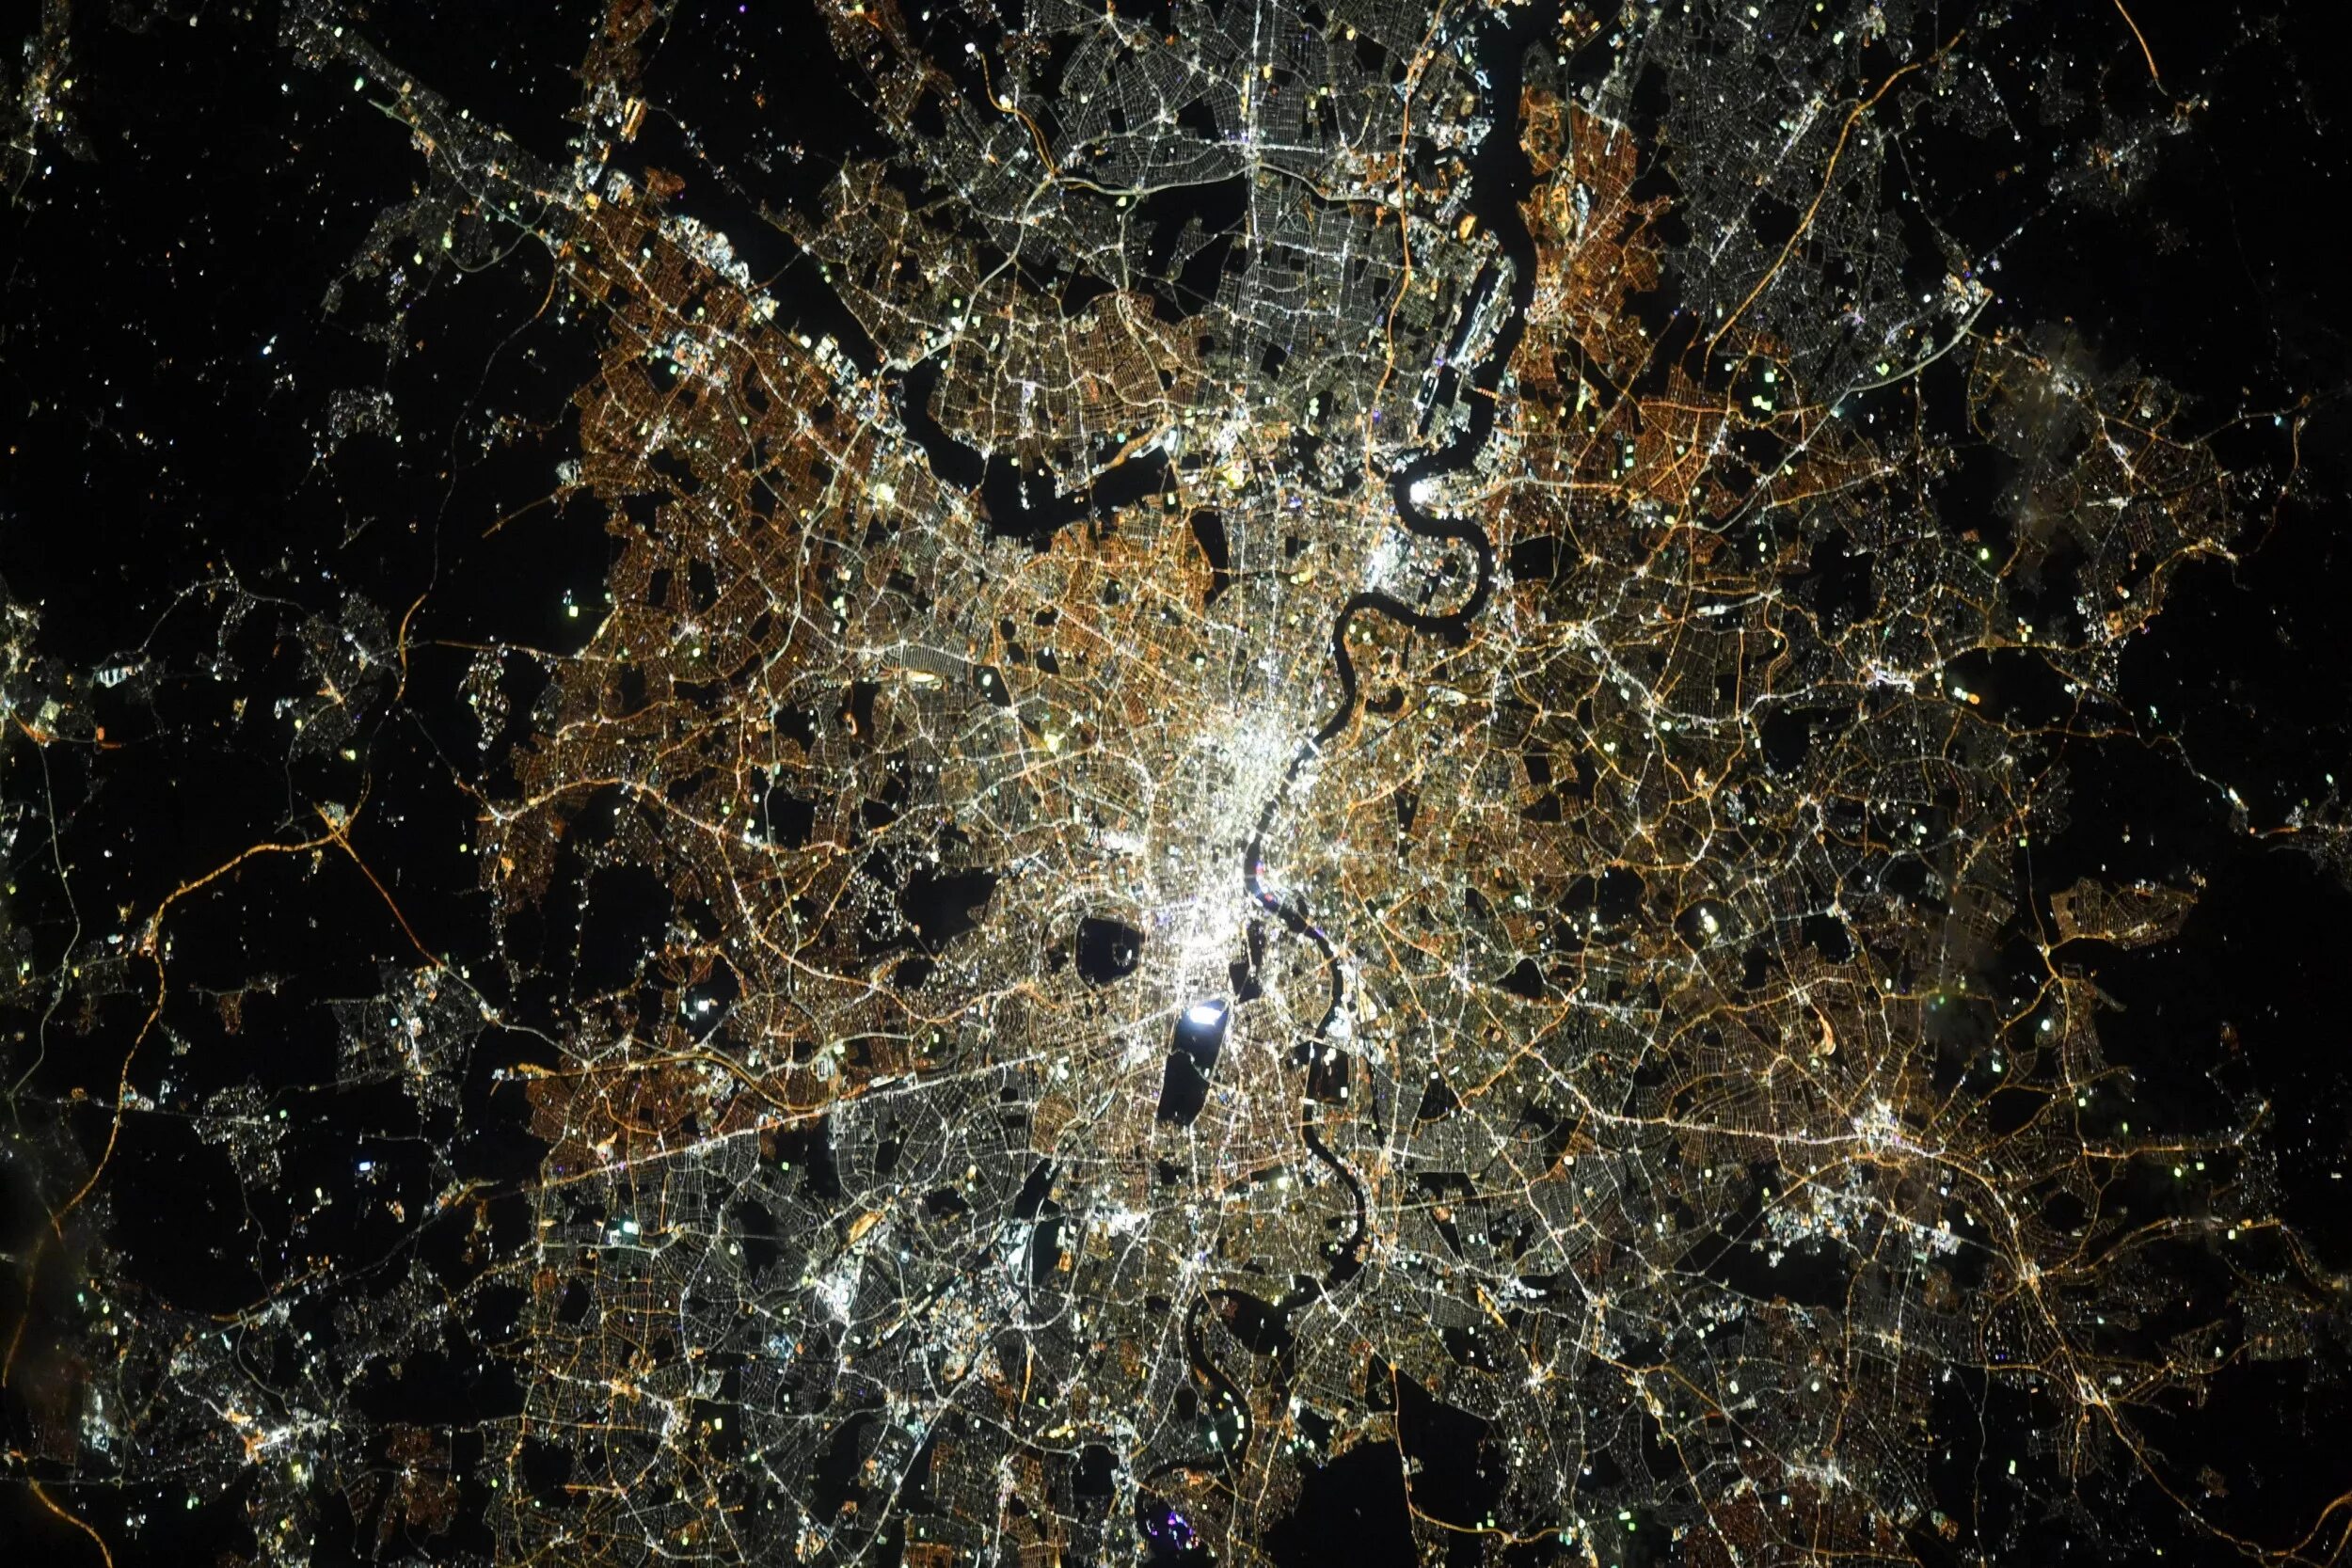 NASA снимки со спутника NASA. Космический снимок. Города из космоса. Лондон вид из космоса. Реальное изображение со спутника